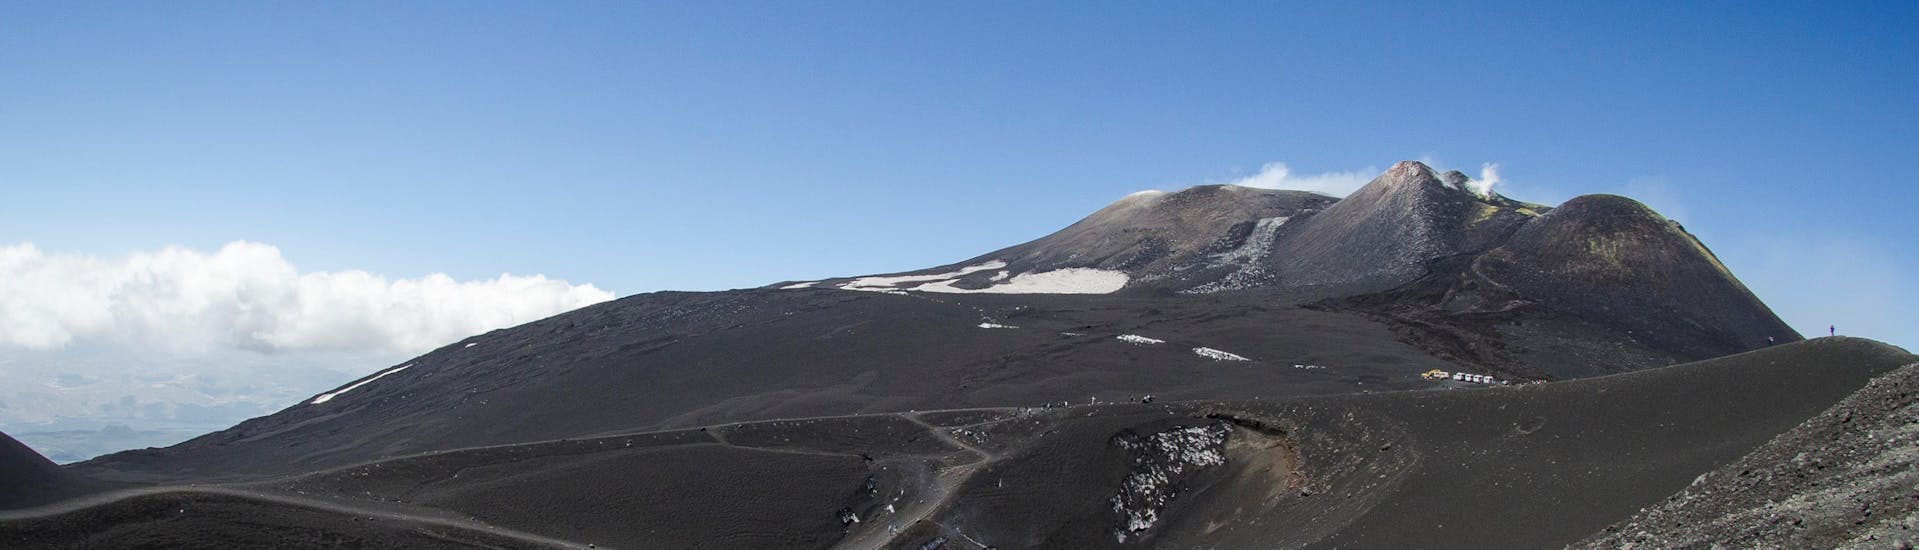 Los cráteres de la cumbre durante la excursión al Monte Etna y las Gargantas de Alcántara desde Taormina con SAT Excursions Taormina.